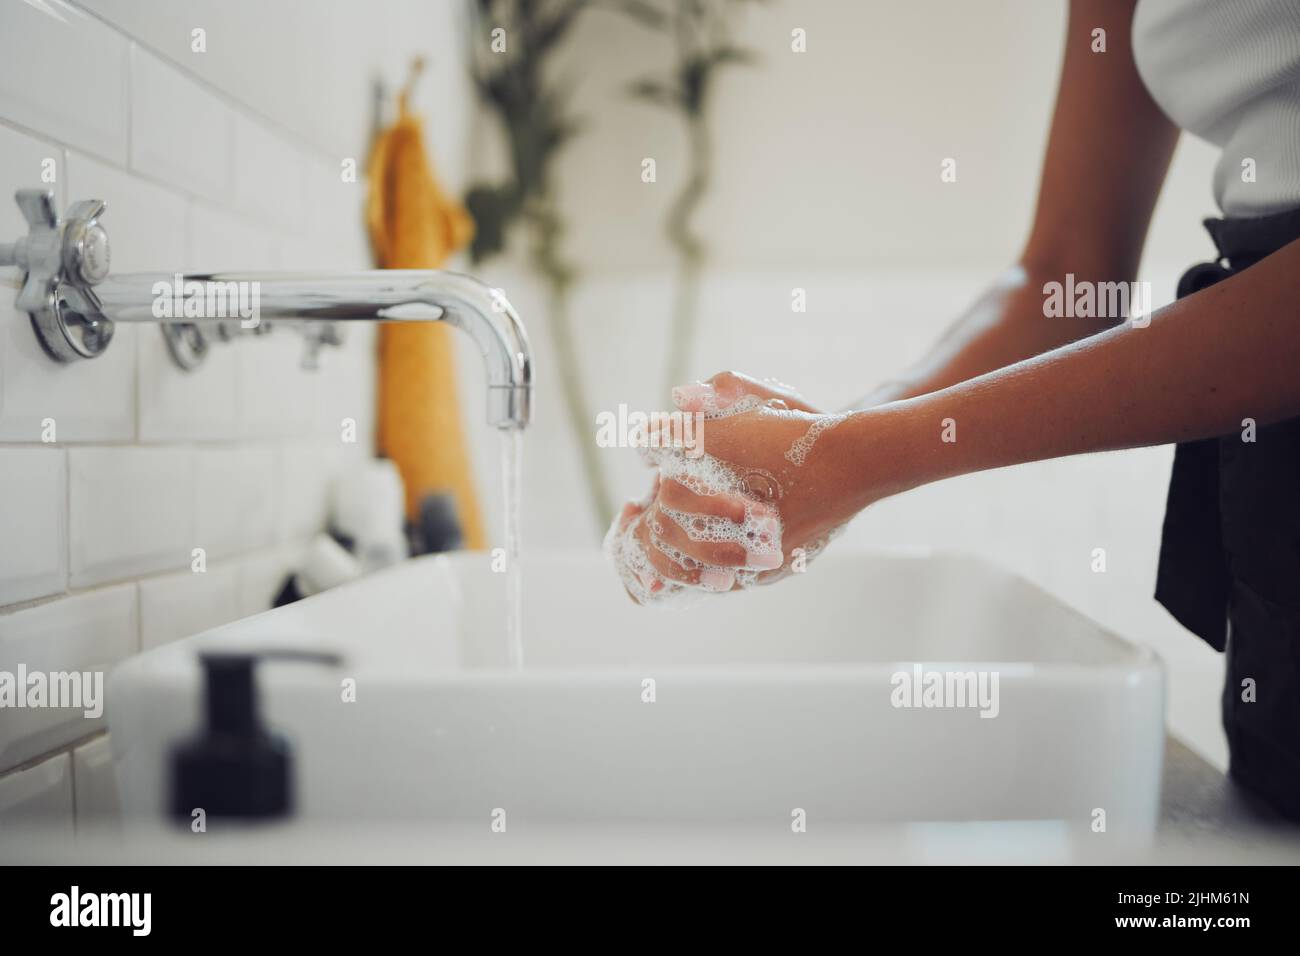 Cierre las manos femeninas con jabón y lávese las manos bajo el grifo con agua limpia. Mujer frotándose las manos antes de enjuagarse por coronavirus Foto de stock